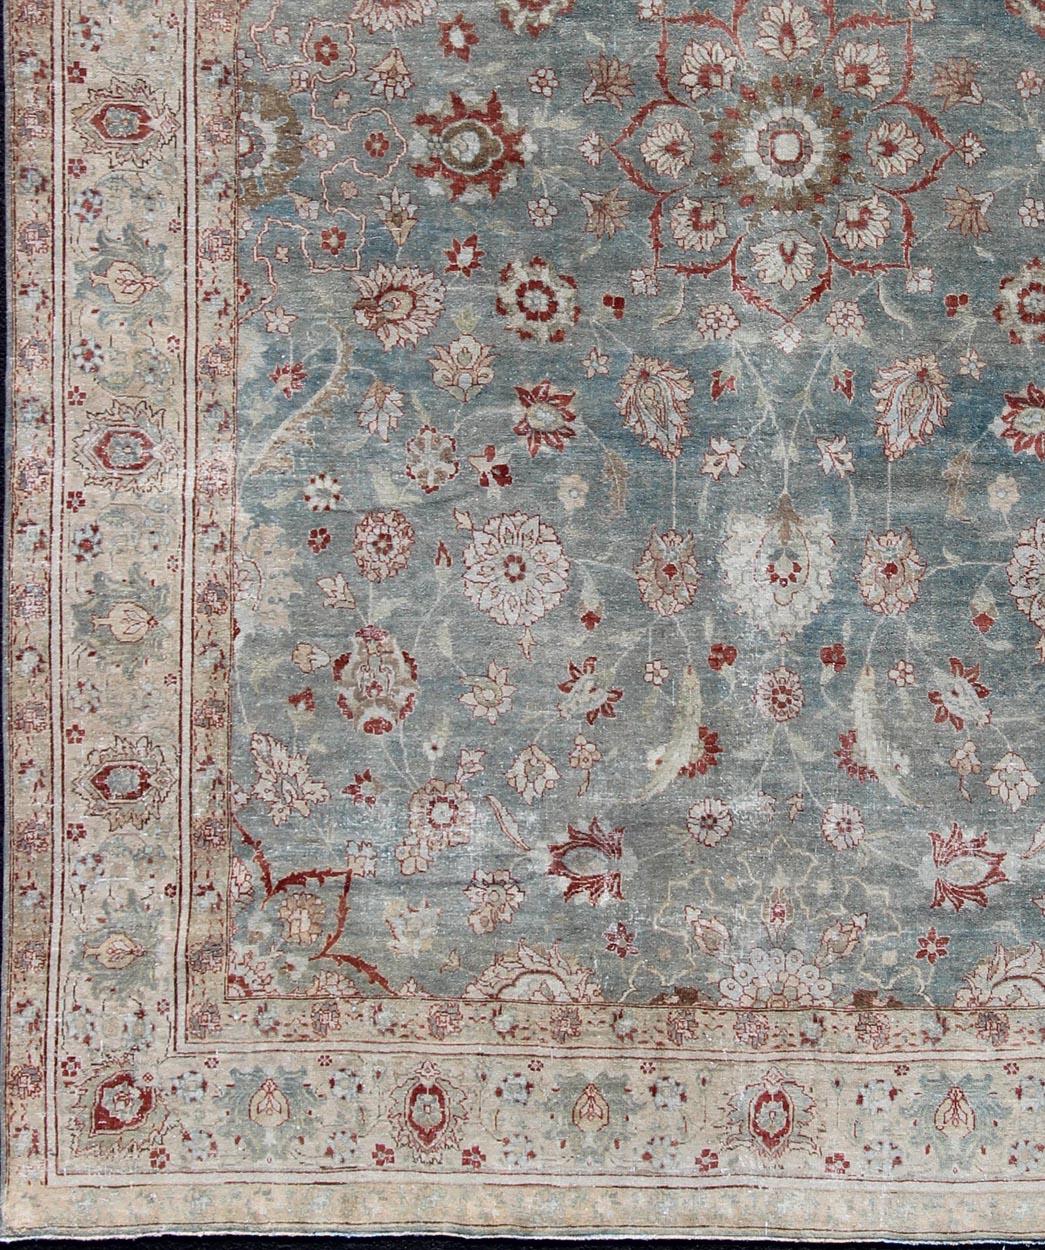 Roter und blauer antiker persischer Täbriz-Teppich mit Blumen und Medaillon, Teppich de-179642, Herkunftsland / Typ: Iran / Täbris, um 1920.

Dieser erhabene und bezaubernde Vintage-Teppich, ein prächtiger Täbris-Teppich aus dem Iran des frühen 20.